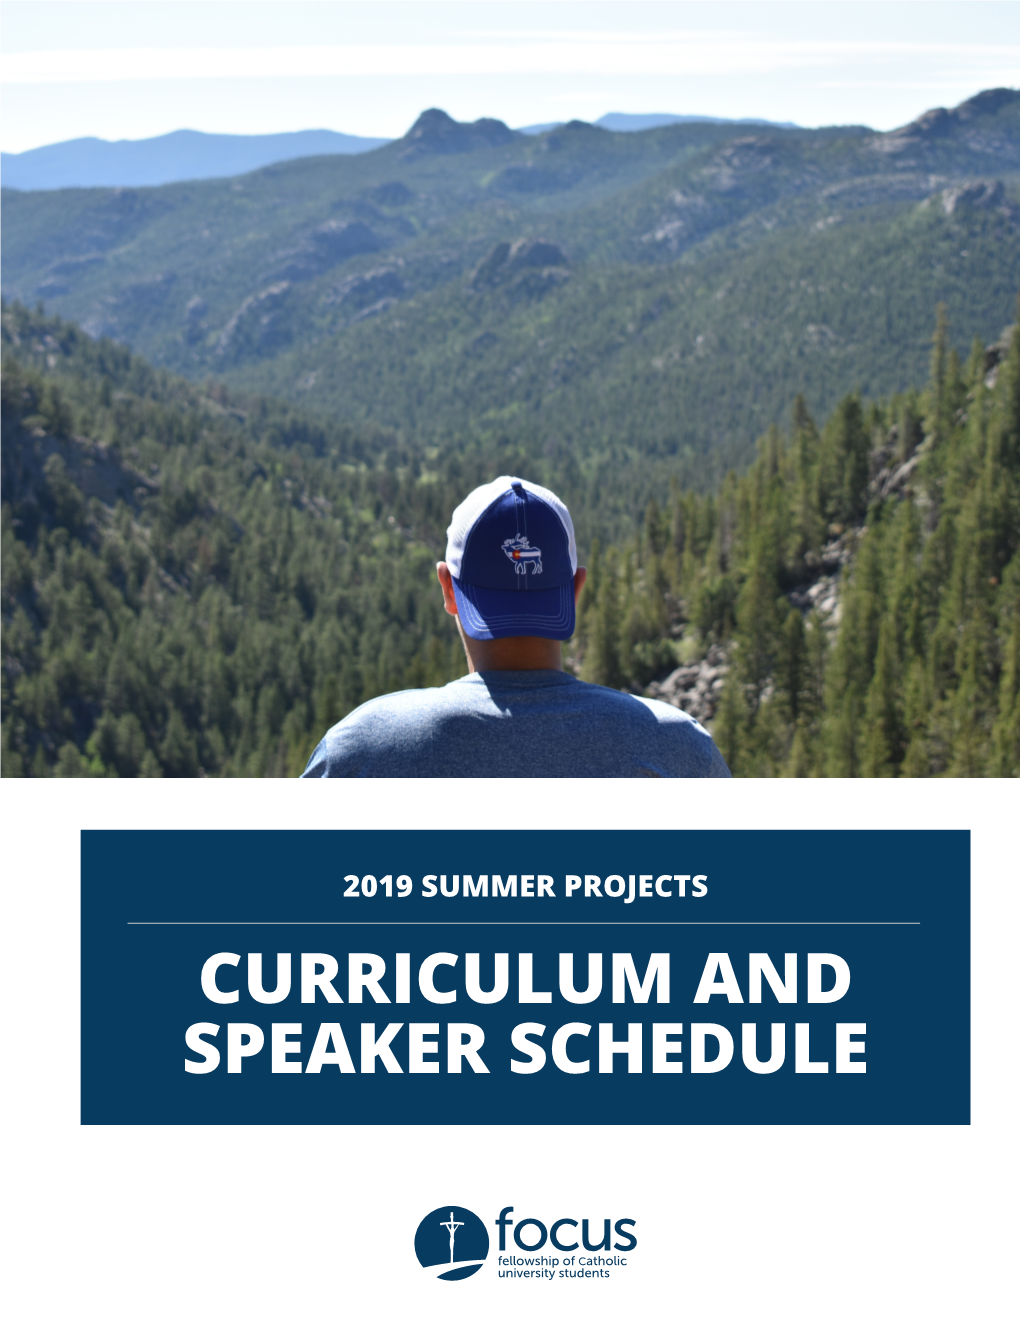 Curriculum and Speaker Schedule